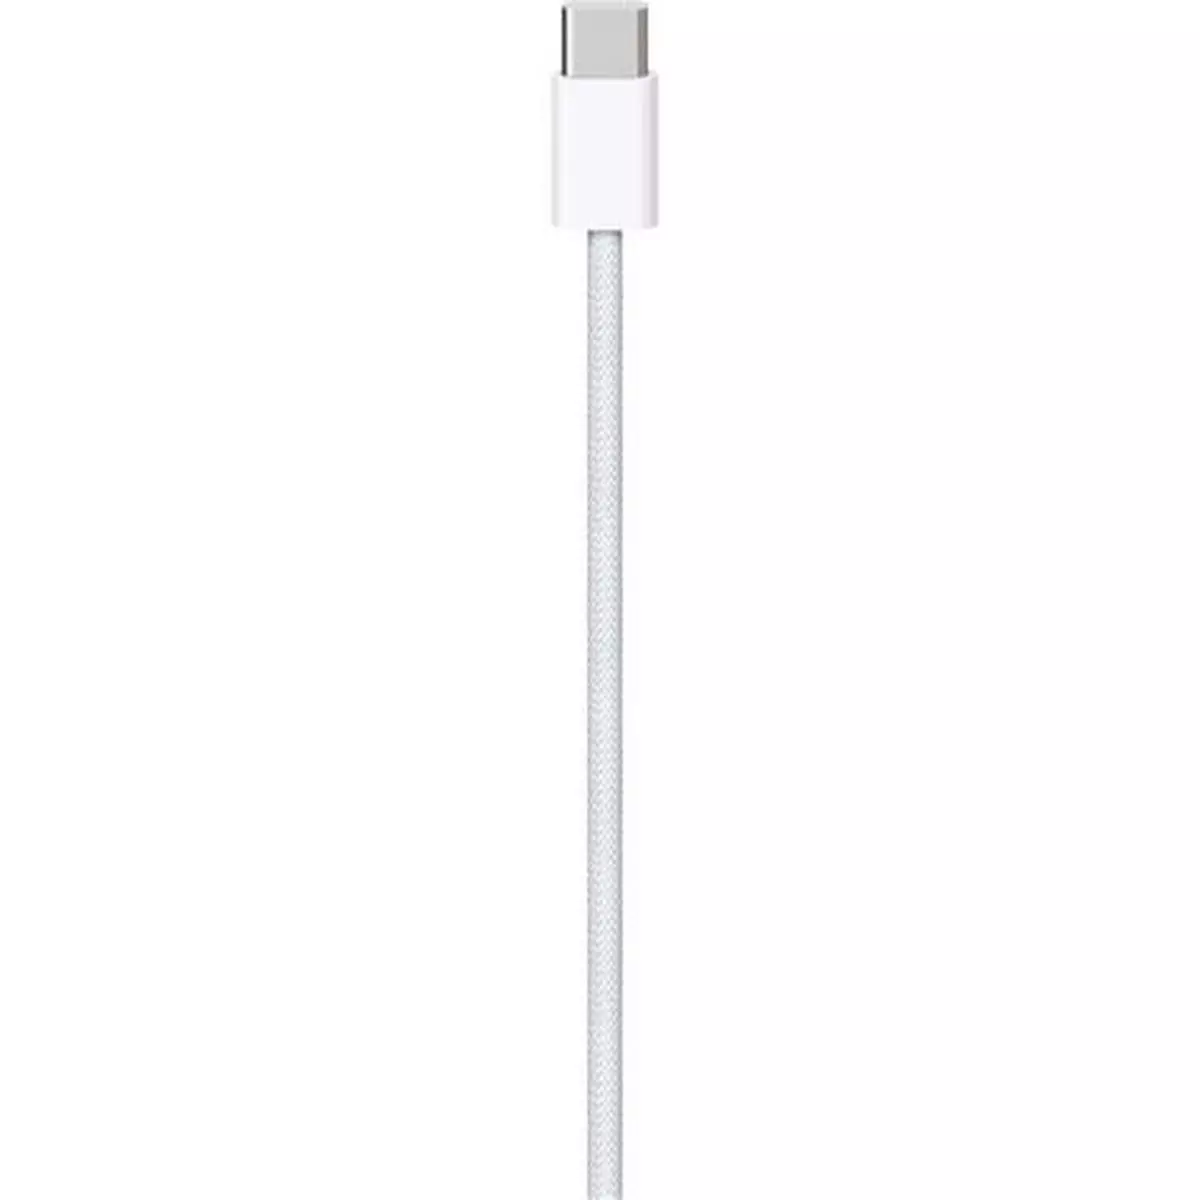 APPLE Câble de charge USB C / USB C - Longueur de câble 1m - Blanc